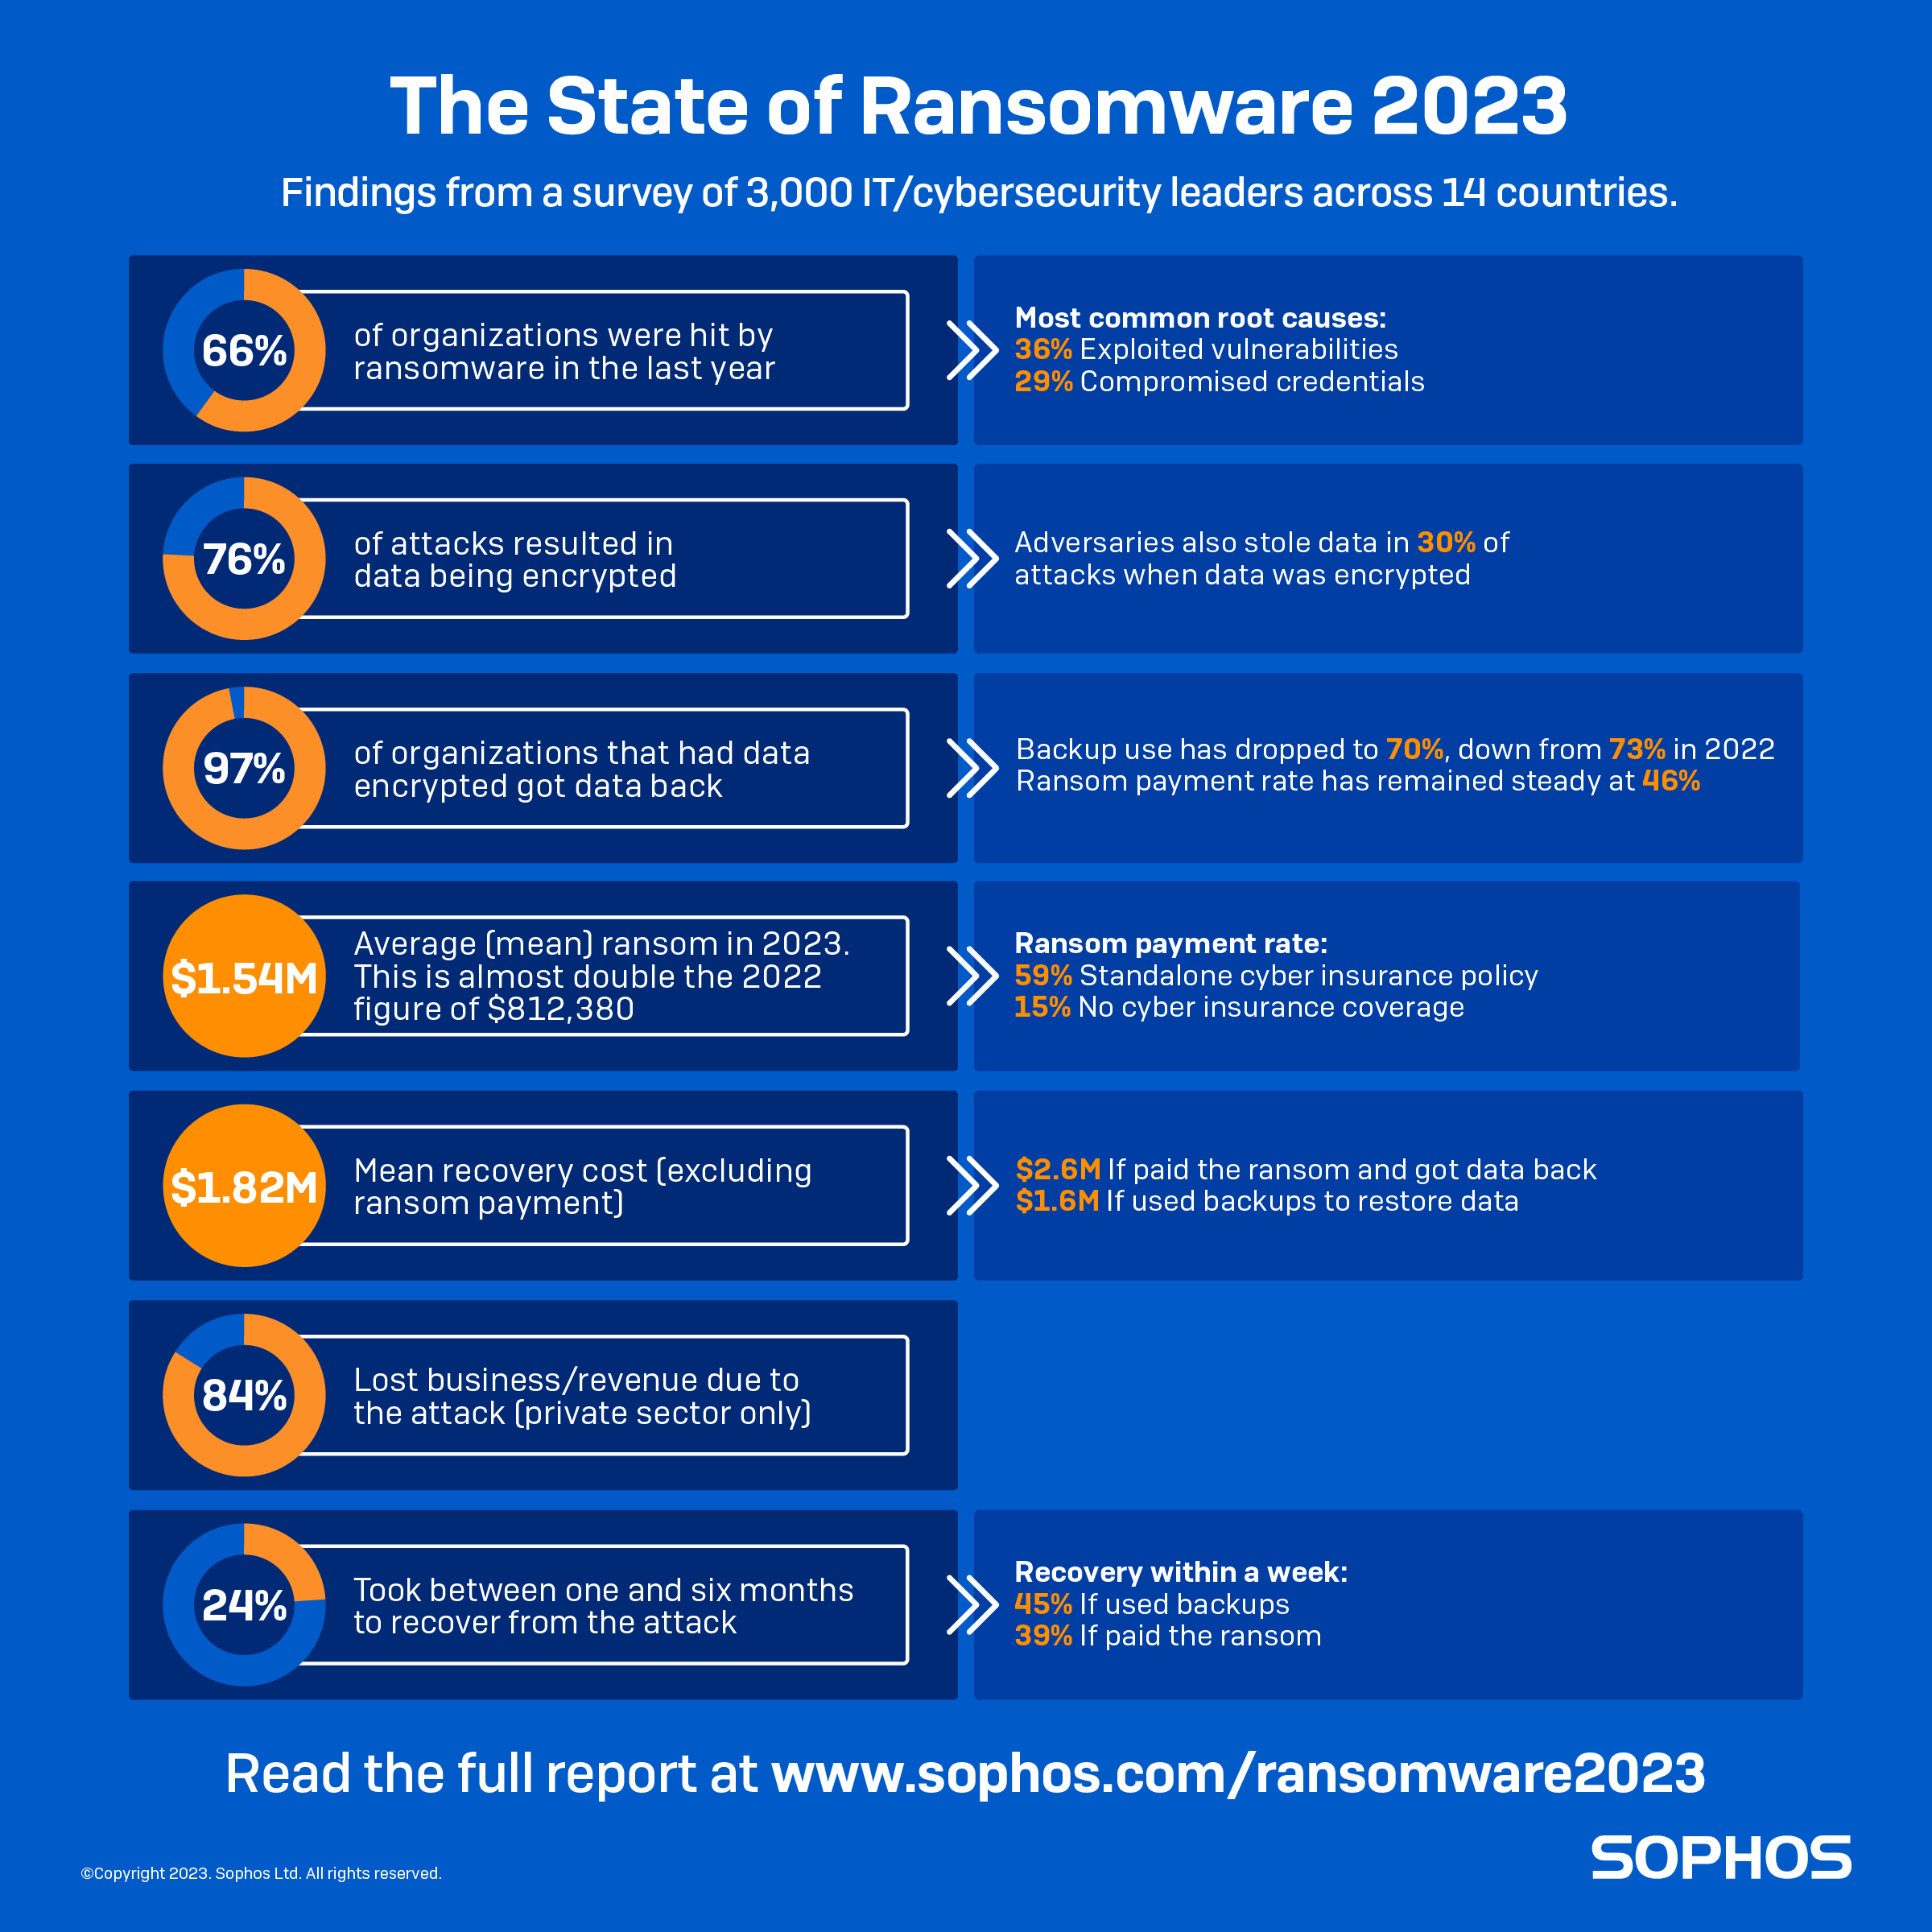 el 84% del ransomware en Colombia se dirige a empresas privadas